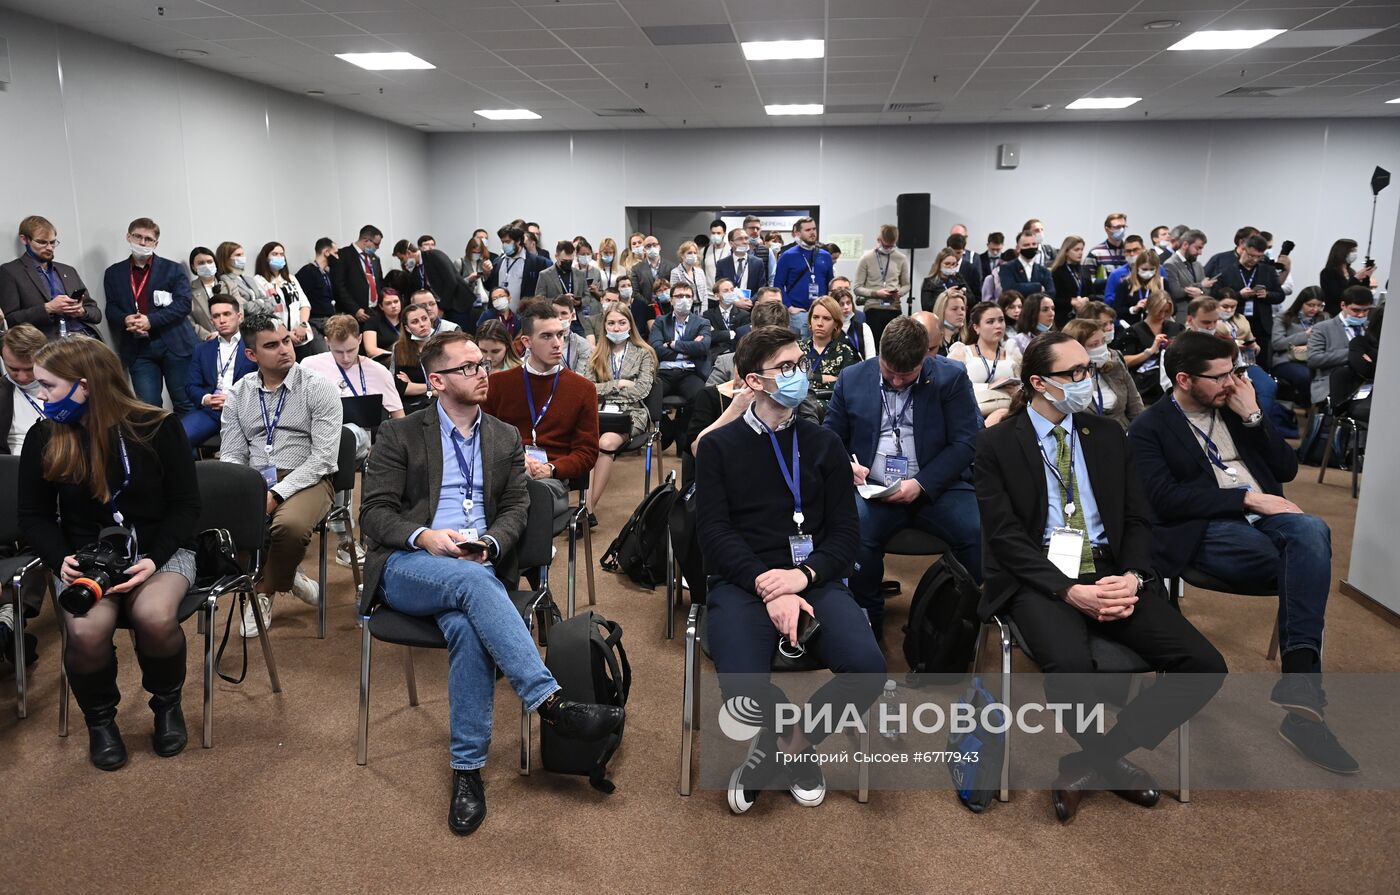 КМУ-2021. Public talk. Новые инструменты поддержки молодых ученых